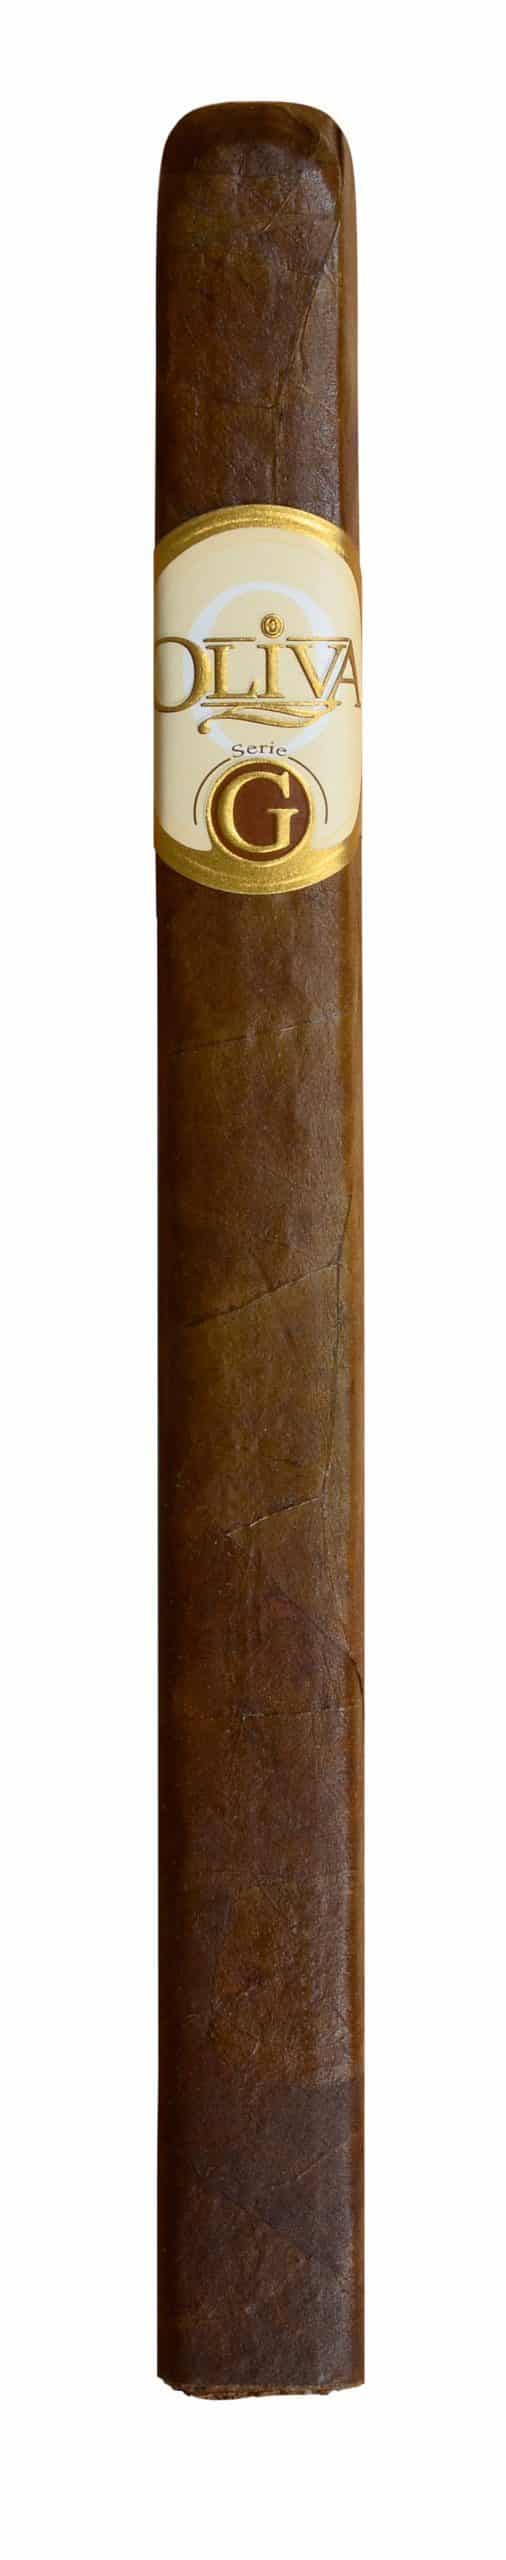 Oliva Serie G Churchill single cigar